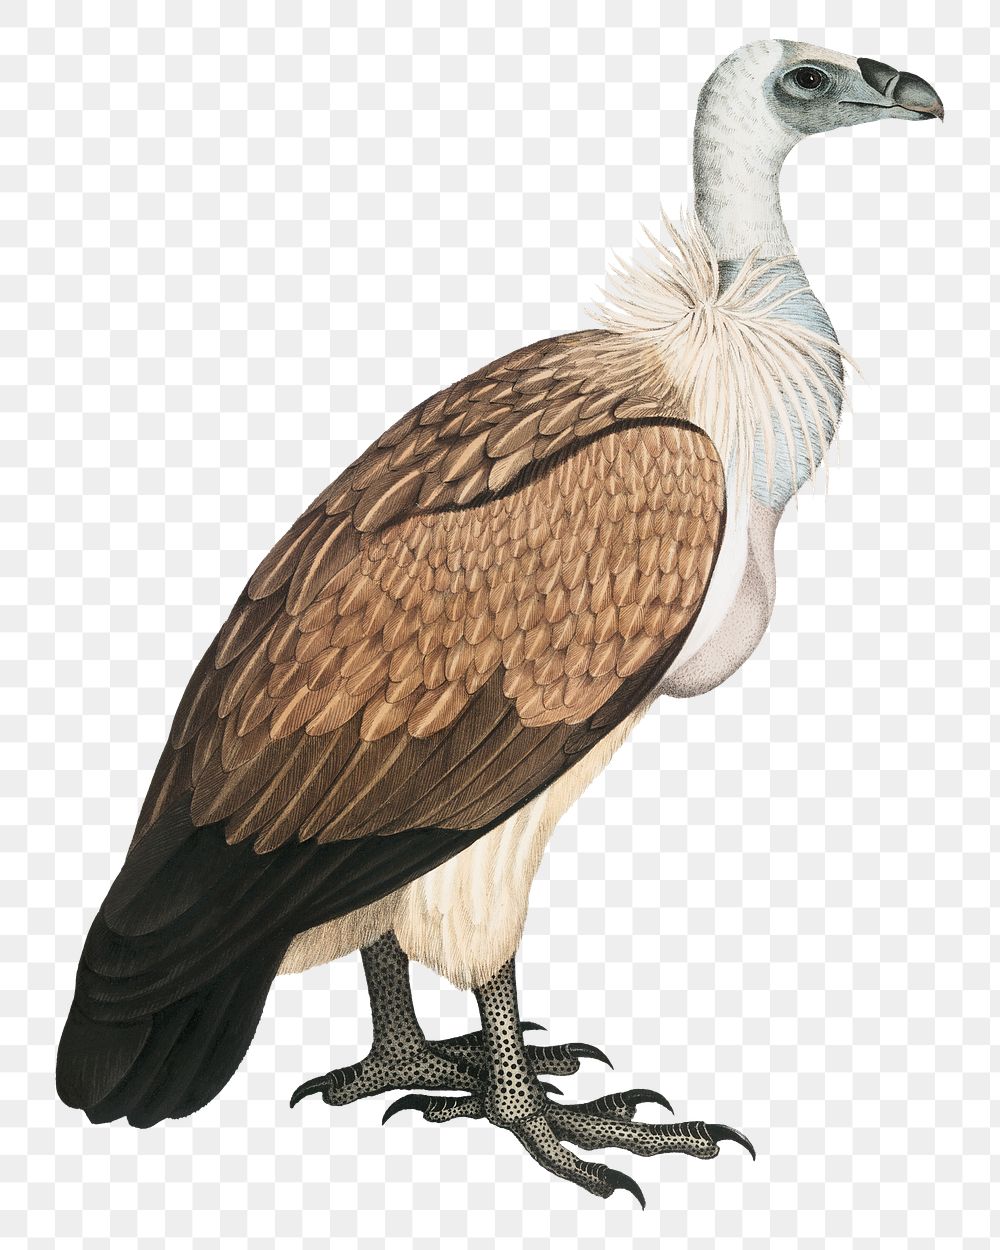 Bengal vulture png bird sticker, vintage animal illustration, transparent background